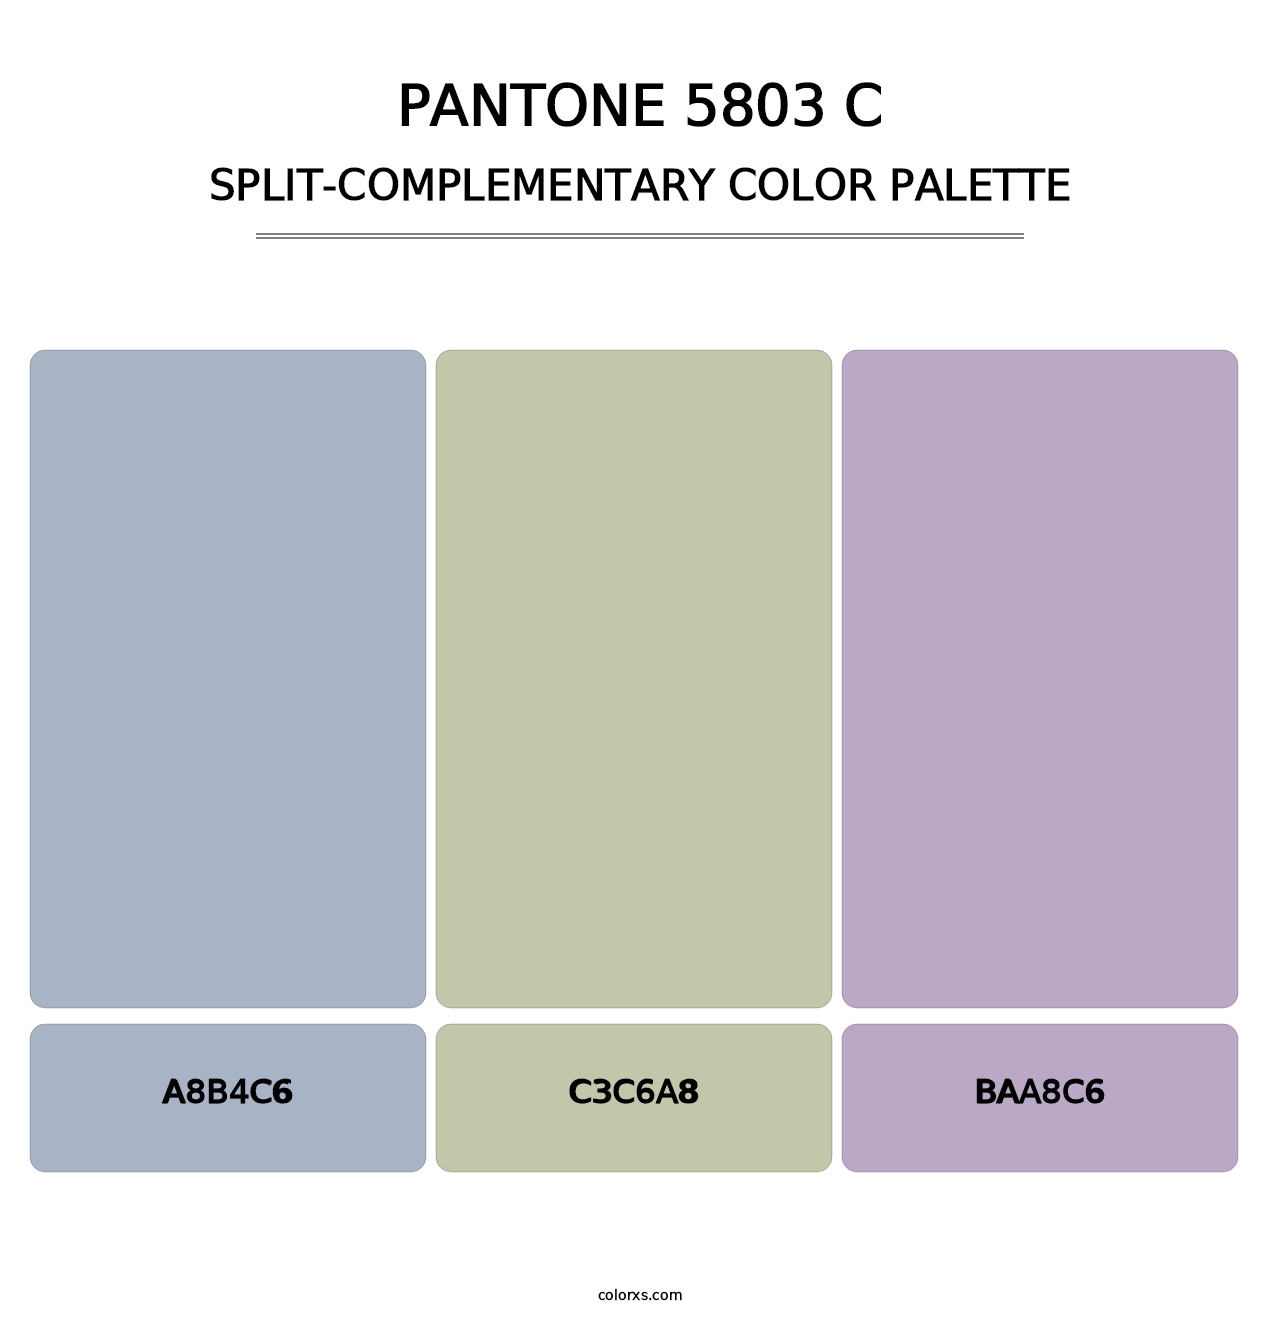 PANTONE 5803 C - Split-Complementary Color Palette